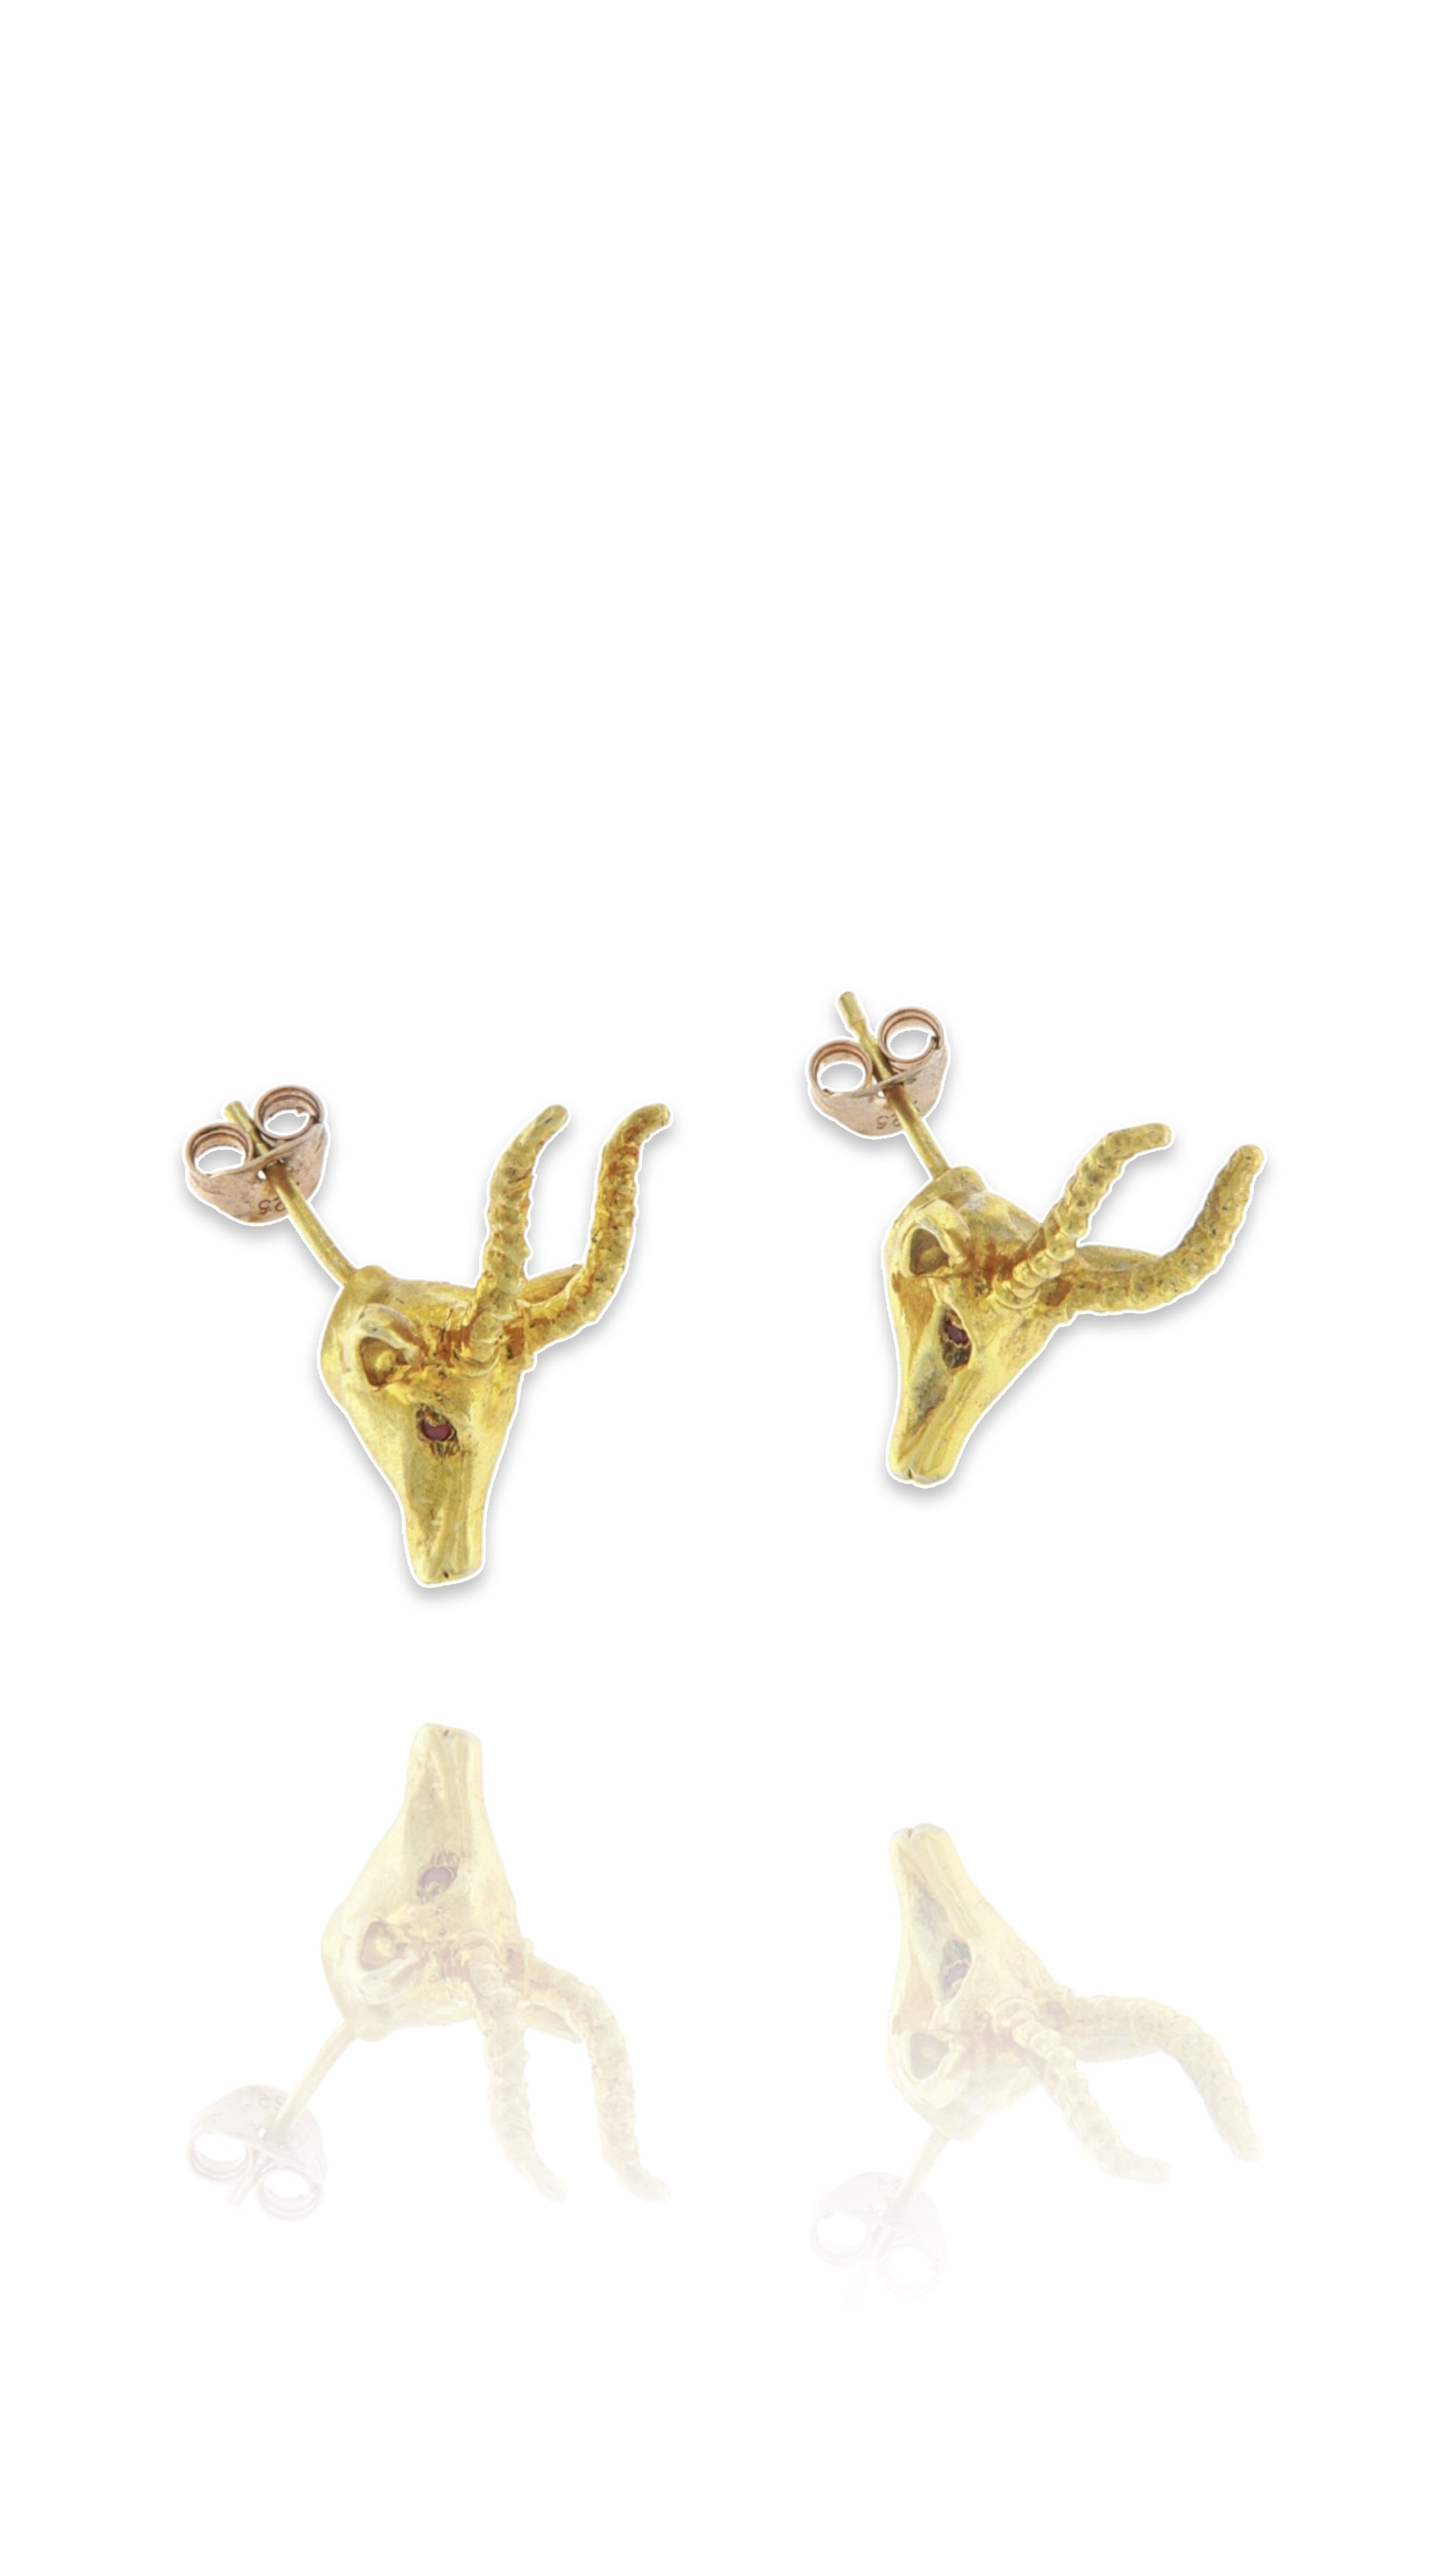 Sterling Silver Gazelle earrings